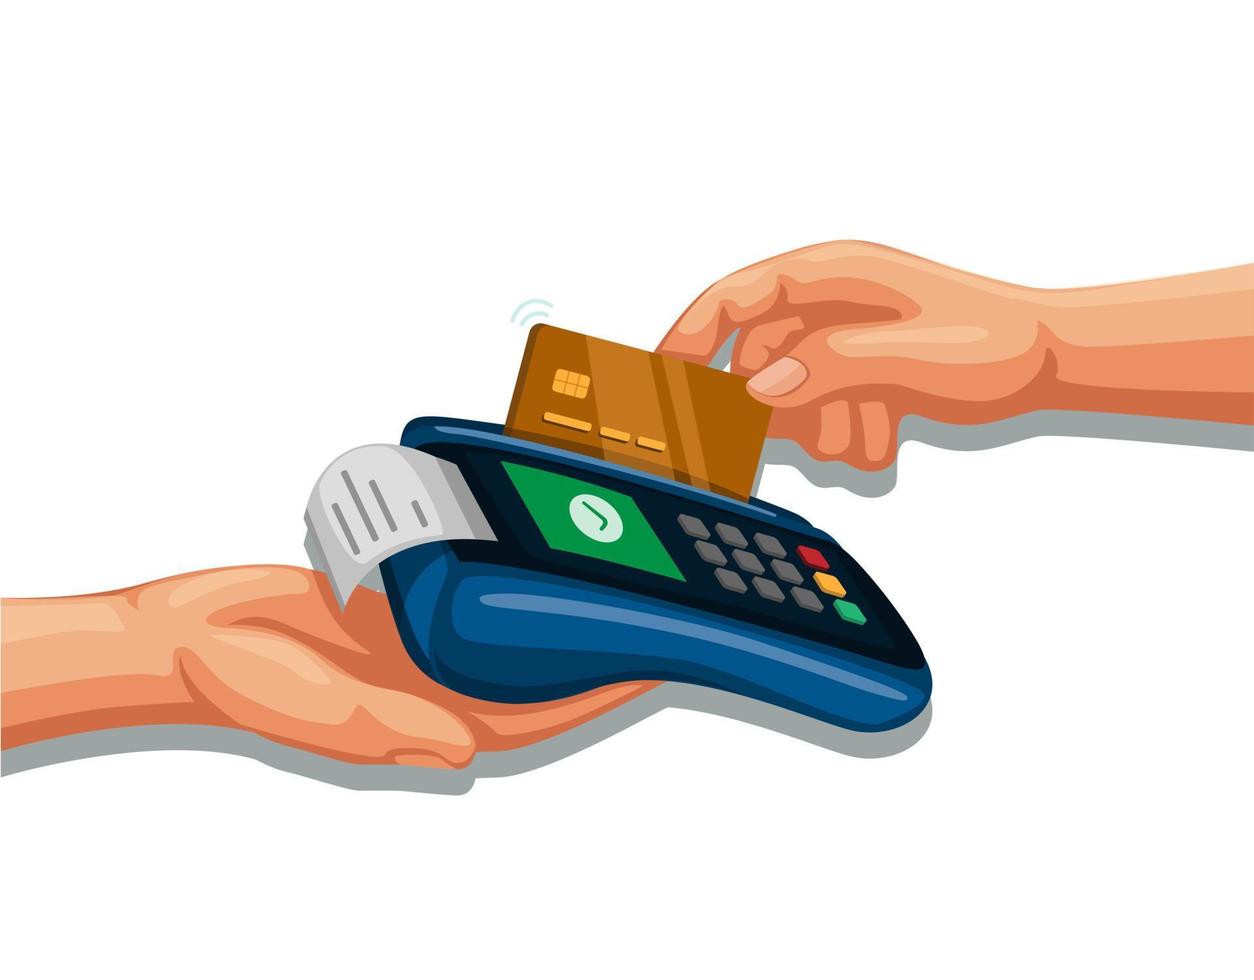 mão furto cartão de crédito no dispositivo de pagamento, banco móvel e compras símbolo conceito cartoon ilustração vetorial vetor